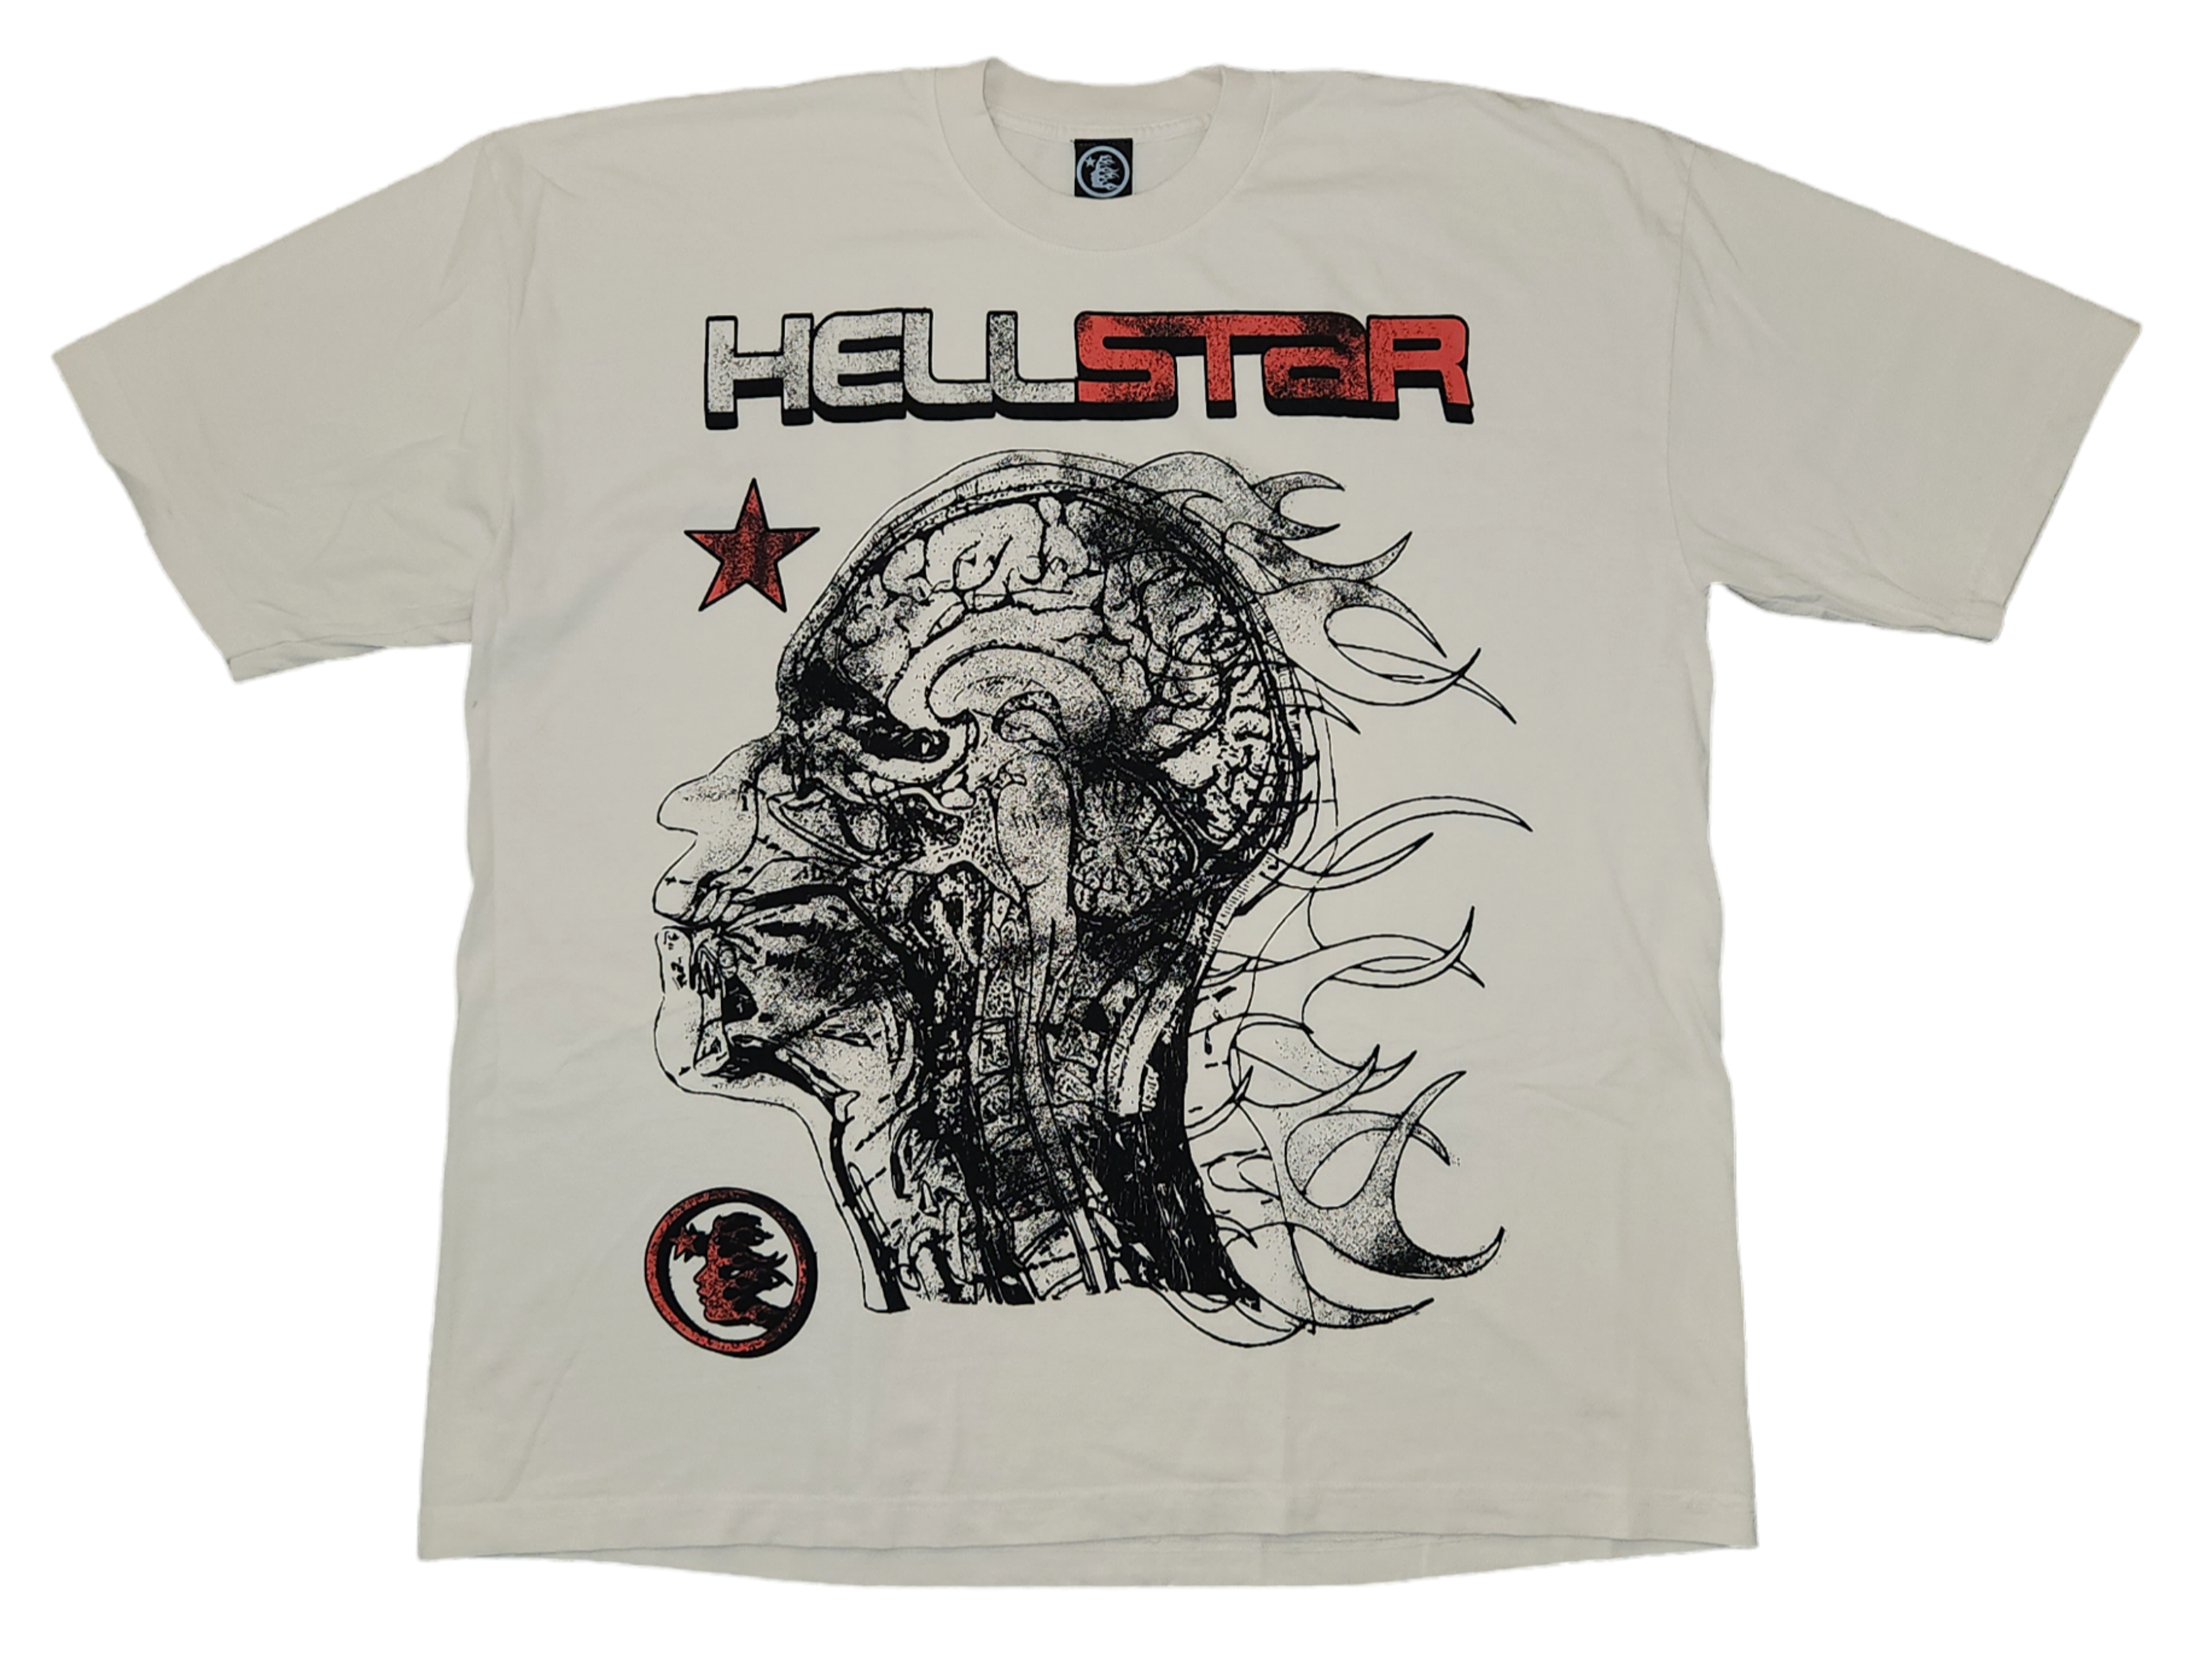 Hellstar "Human Development" T-Shirt